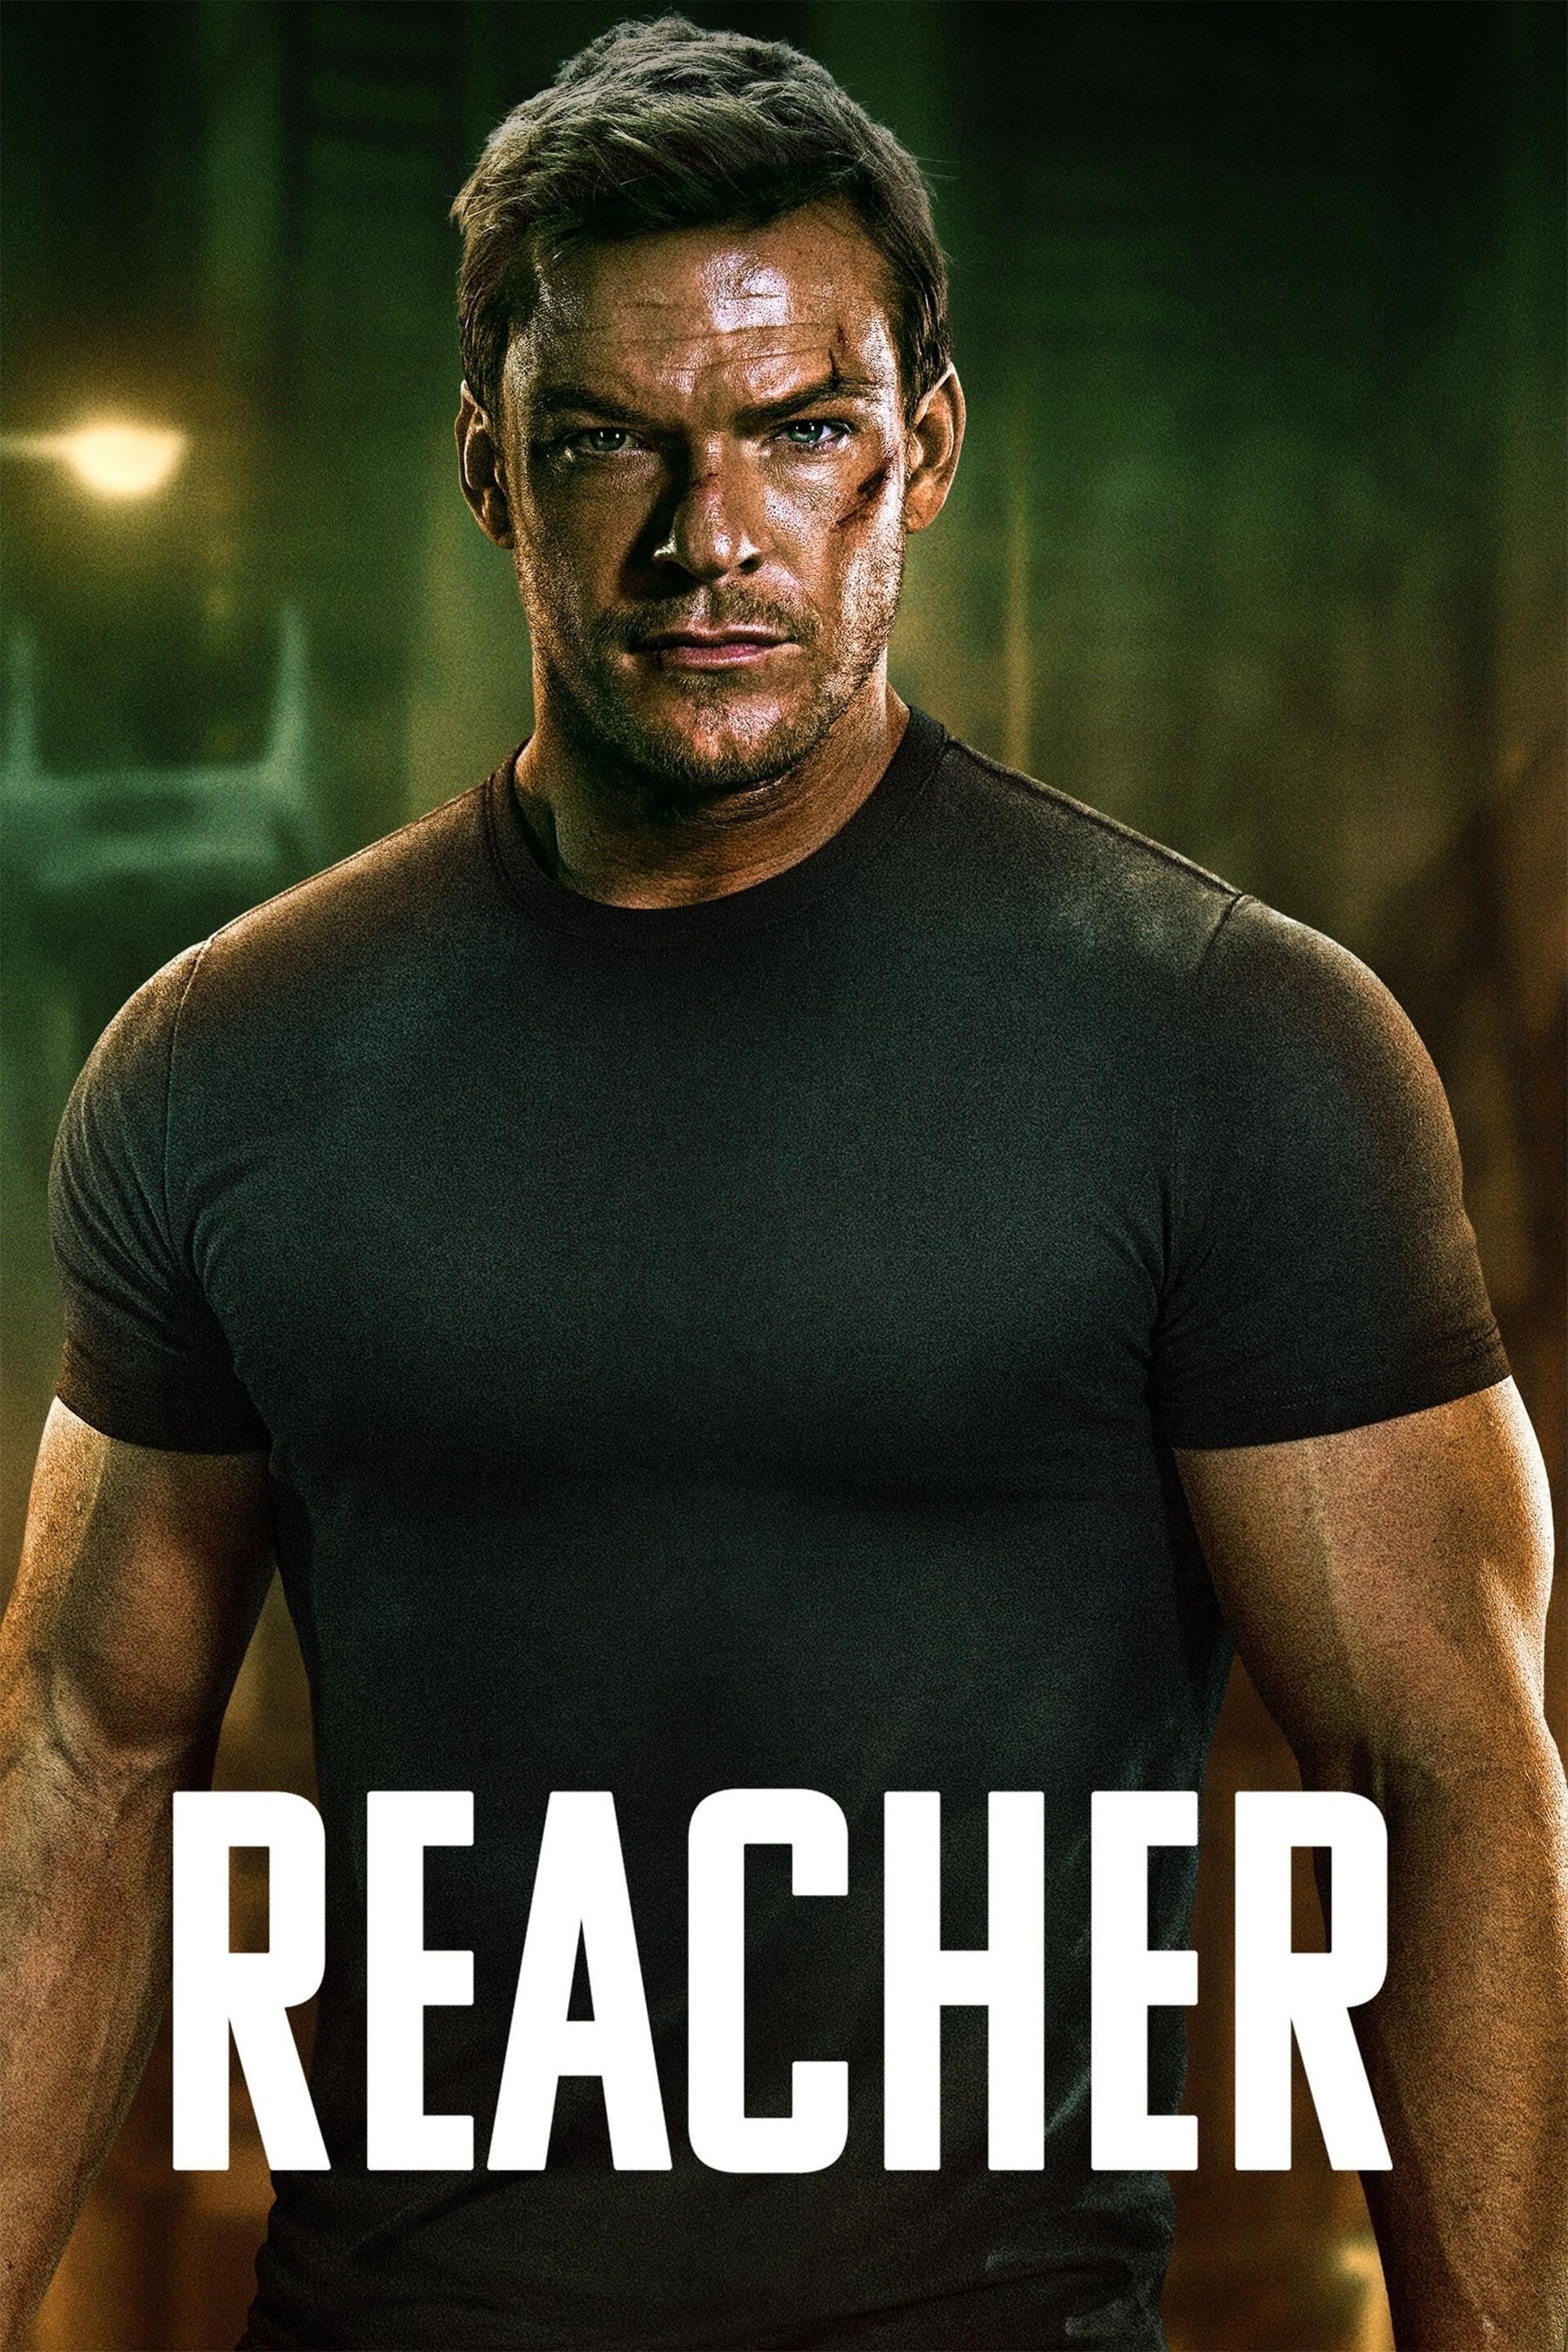 Reacher poster